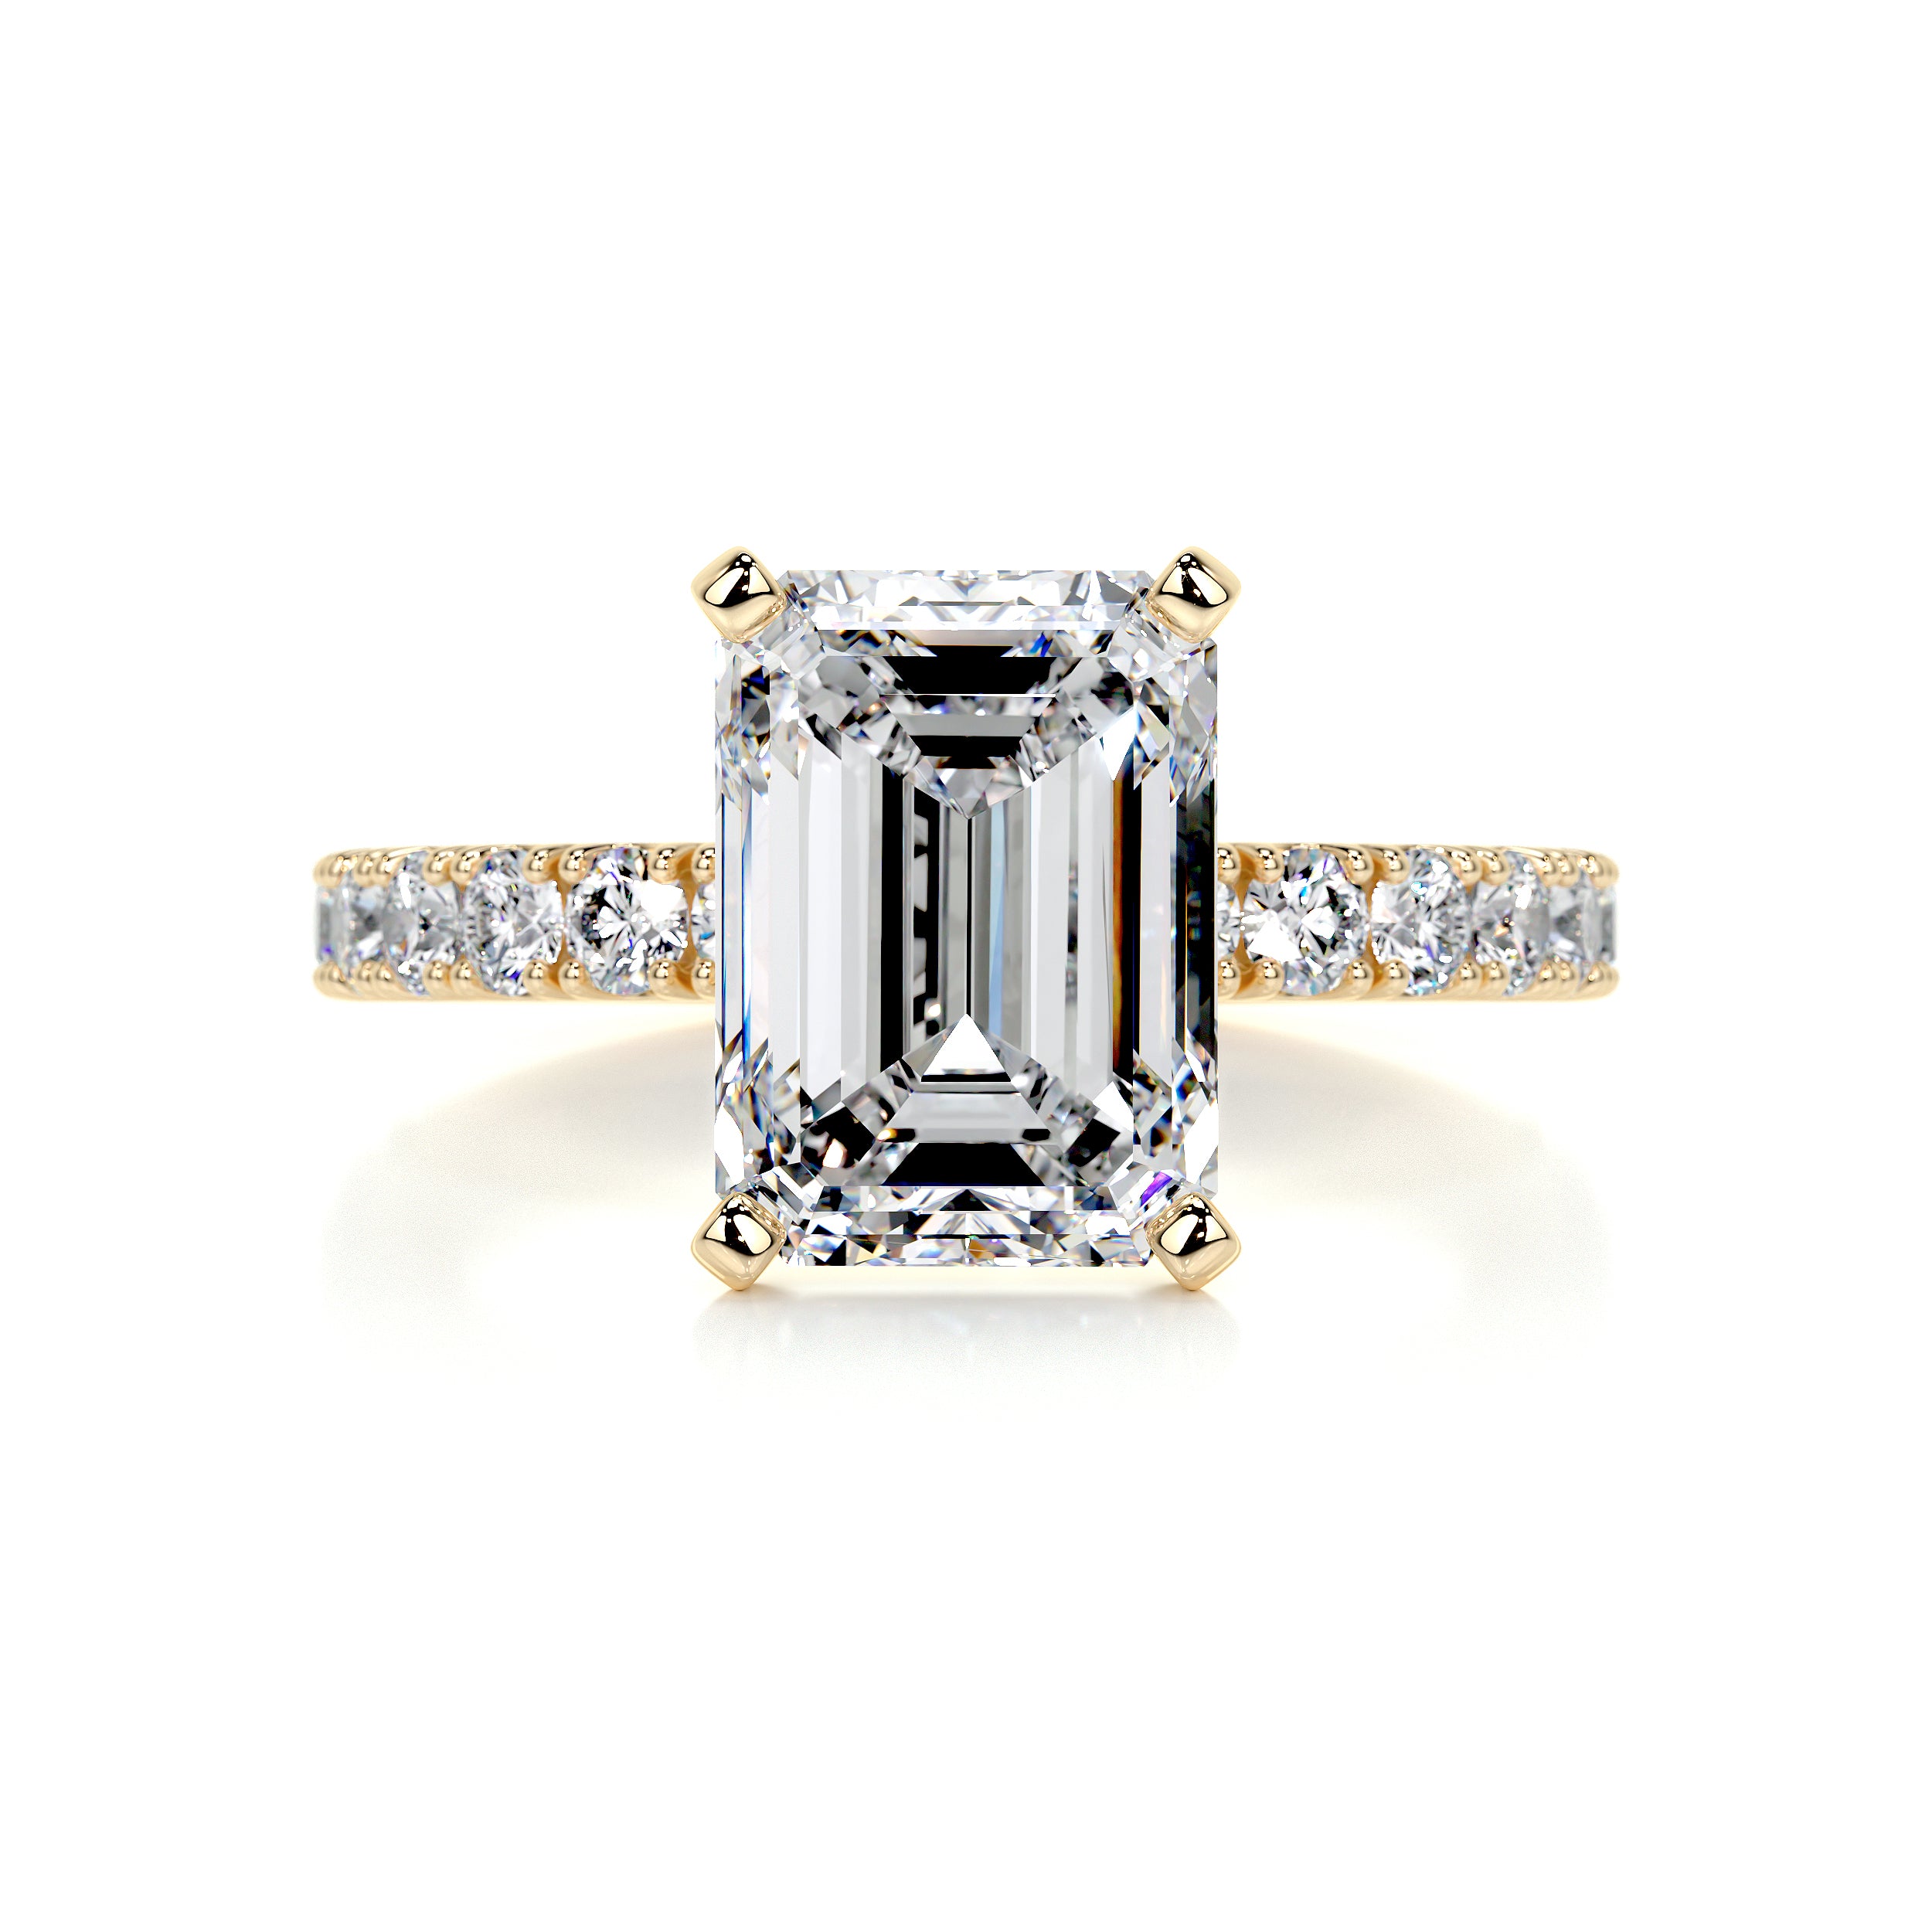 Royal Diamond Engagement Ring   (3.5 Carat) -18K Yellow Gold